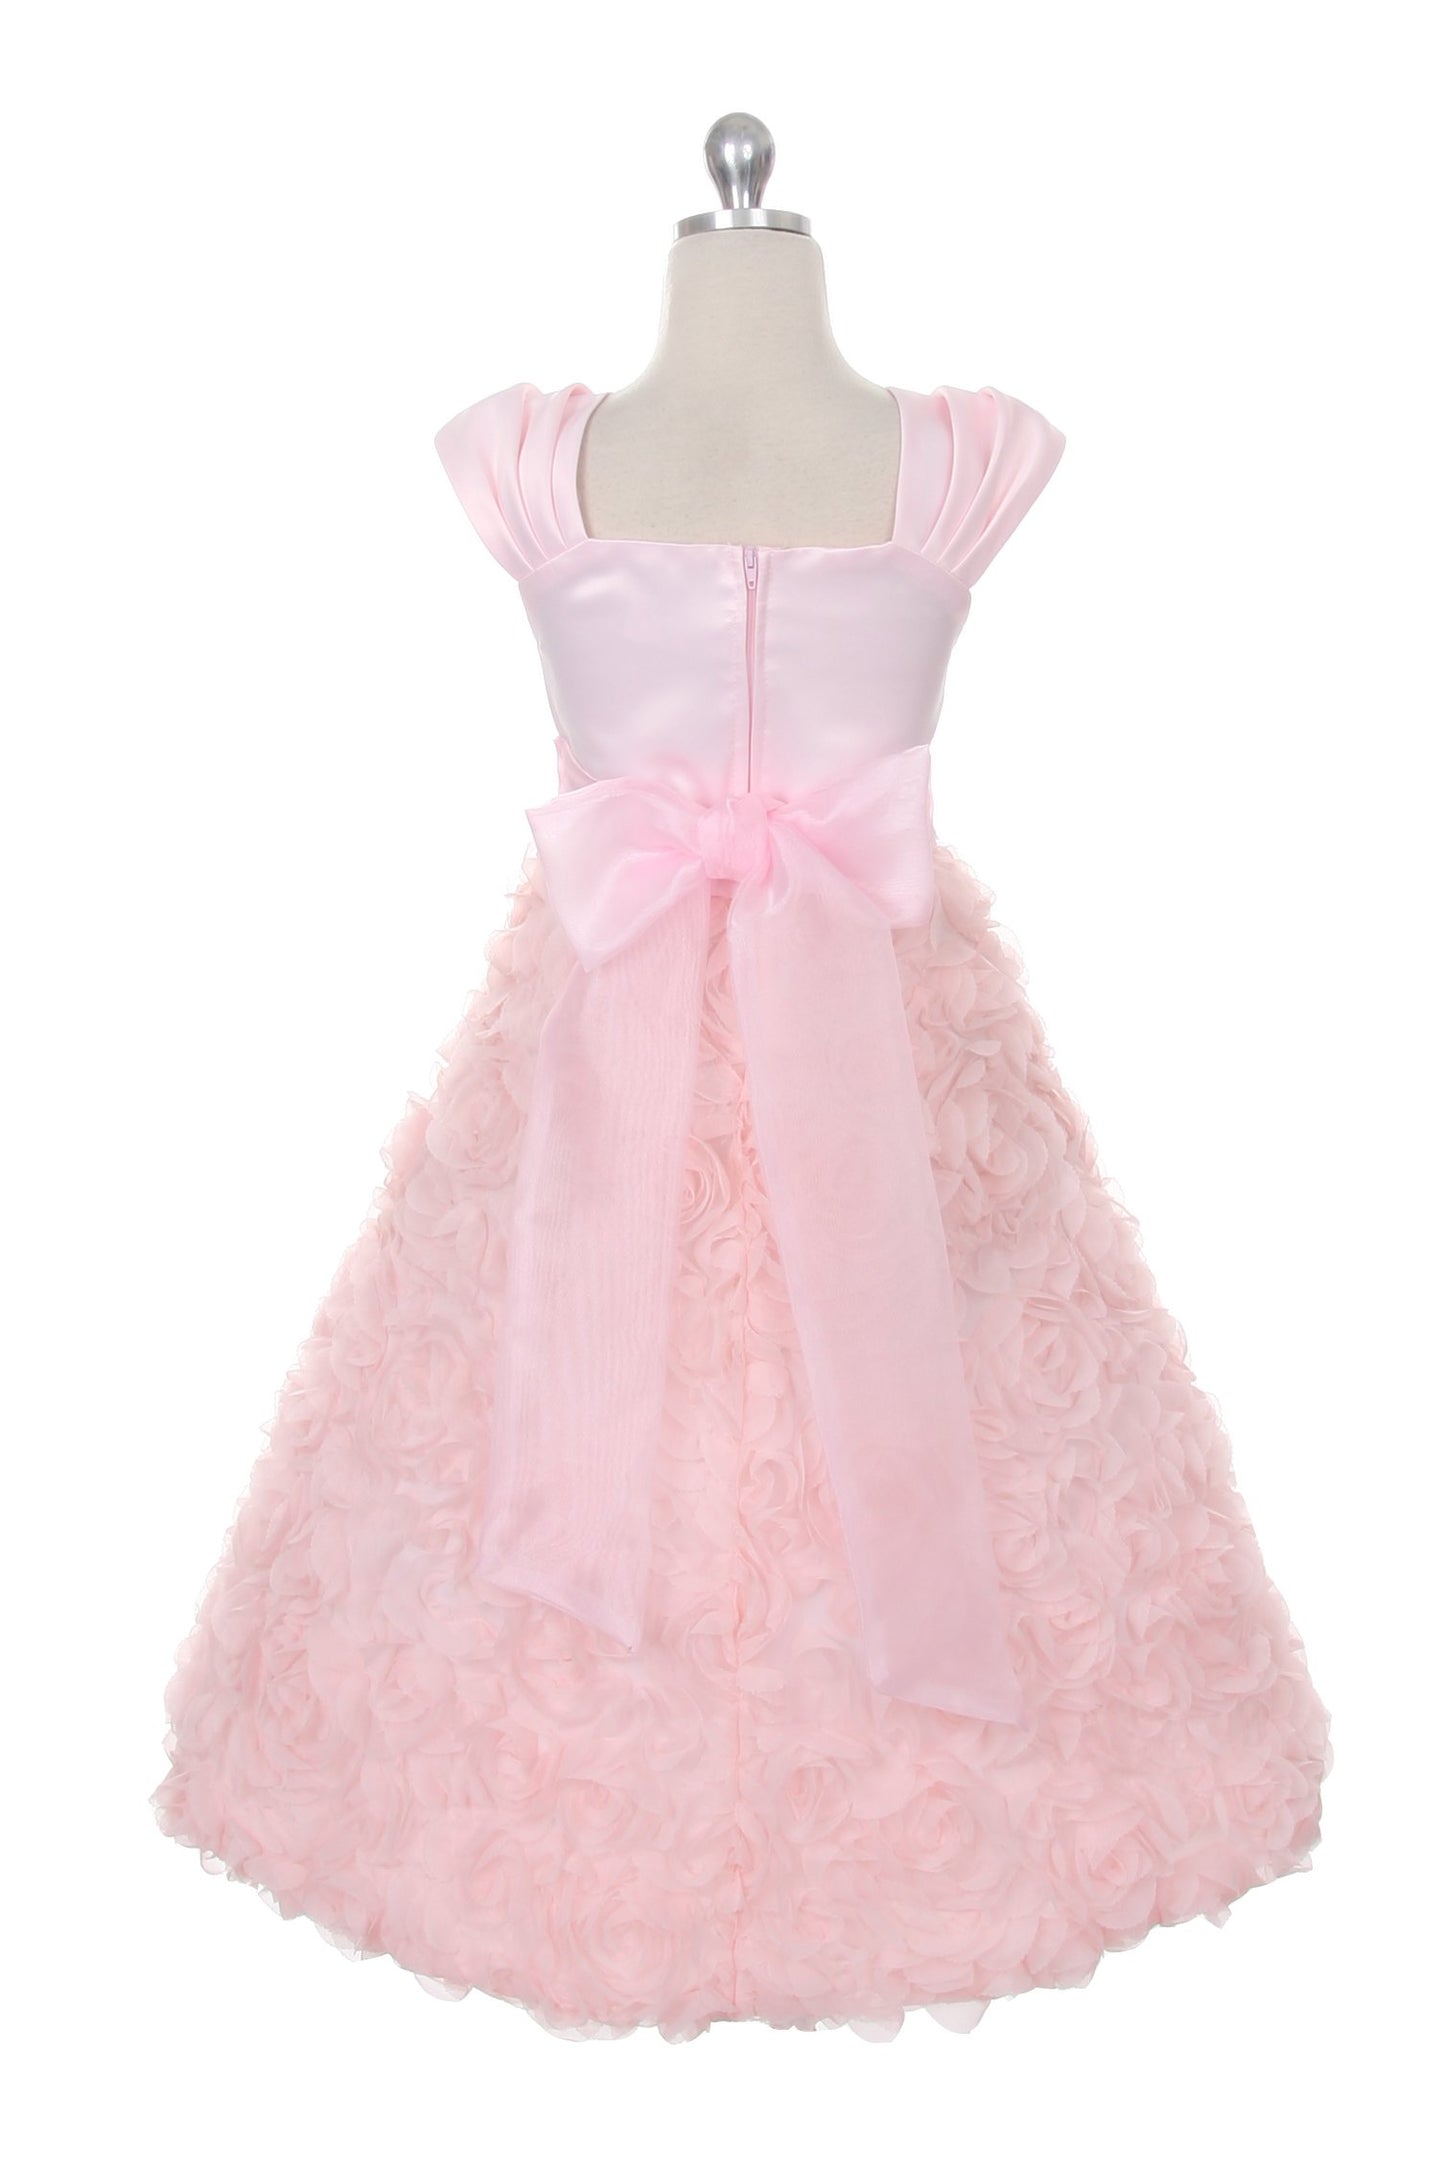 Dress - Rosette Skirt Sleeve Girl Dress